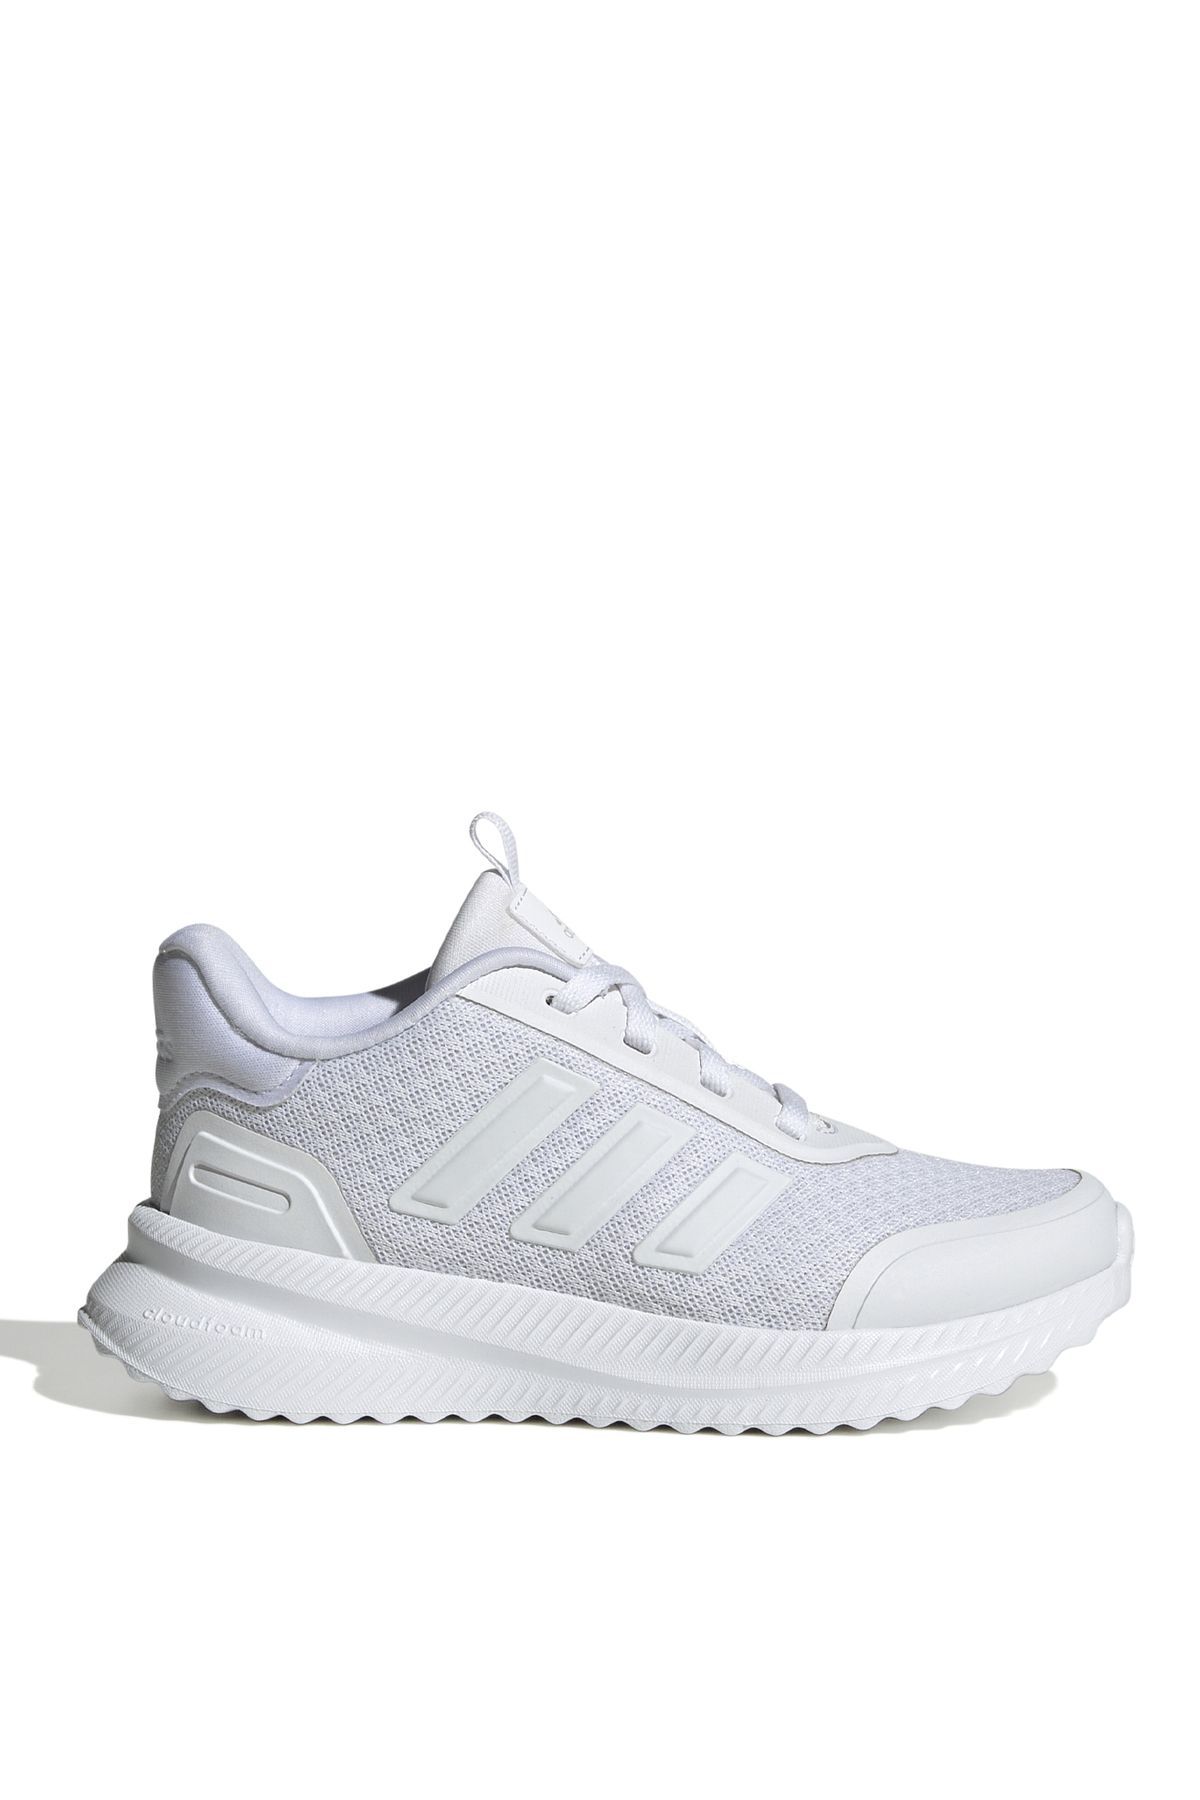 adidas Beyaz Kadın Yürüyüş Ayakkabısı ID0255-X_PLRPATH K